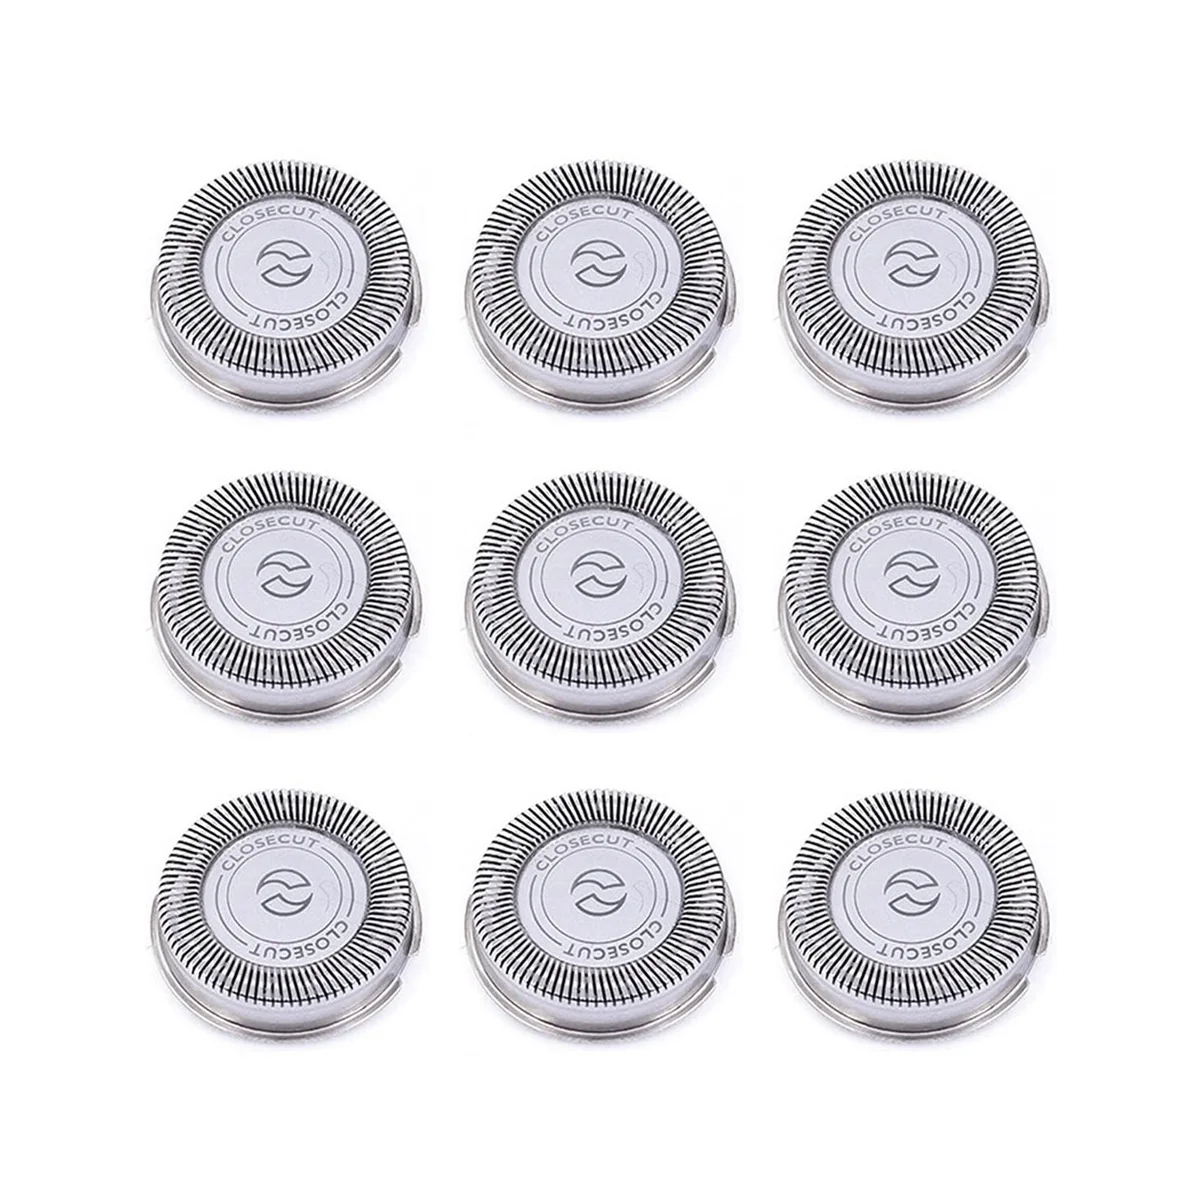 9 упаковок сменных головок SH30 для бритв Philips Norelco серий 3000, 2000, 1000 и S738 с прочными острыми лезвиями